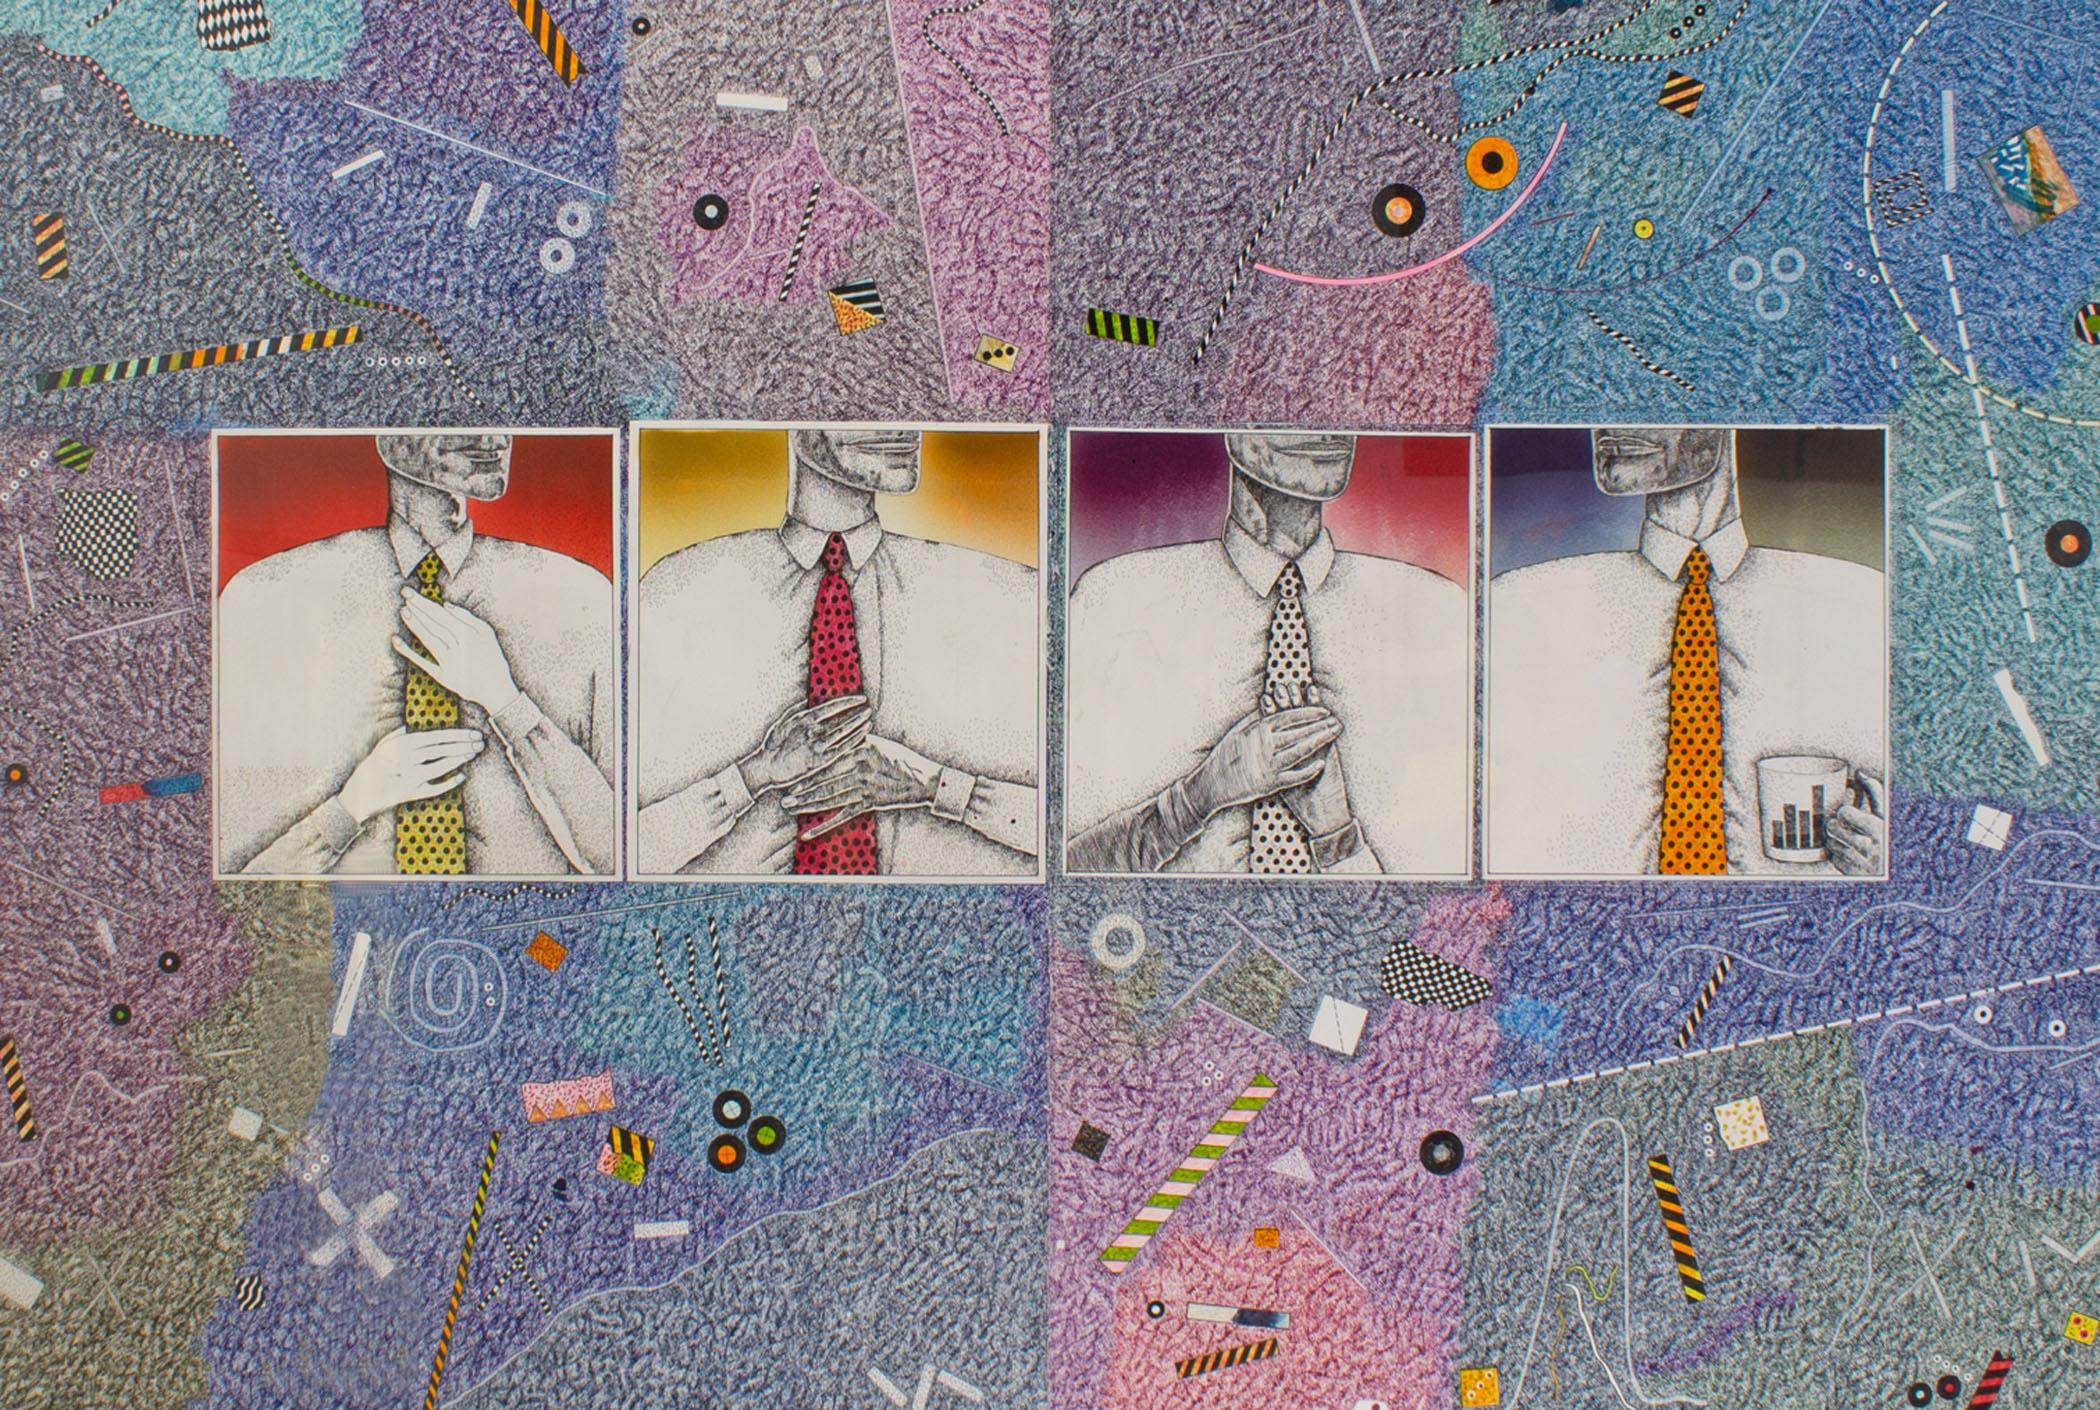 Un collage et un dessin abstrait au marqueur de l'artiste américain Thom Shaw (1947-2010). Quatre carrés représentant des hommes à différents stades de l'enfilage d'une cravate sont collés sur le fond au dessin complexe. Le fond des collages est